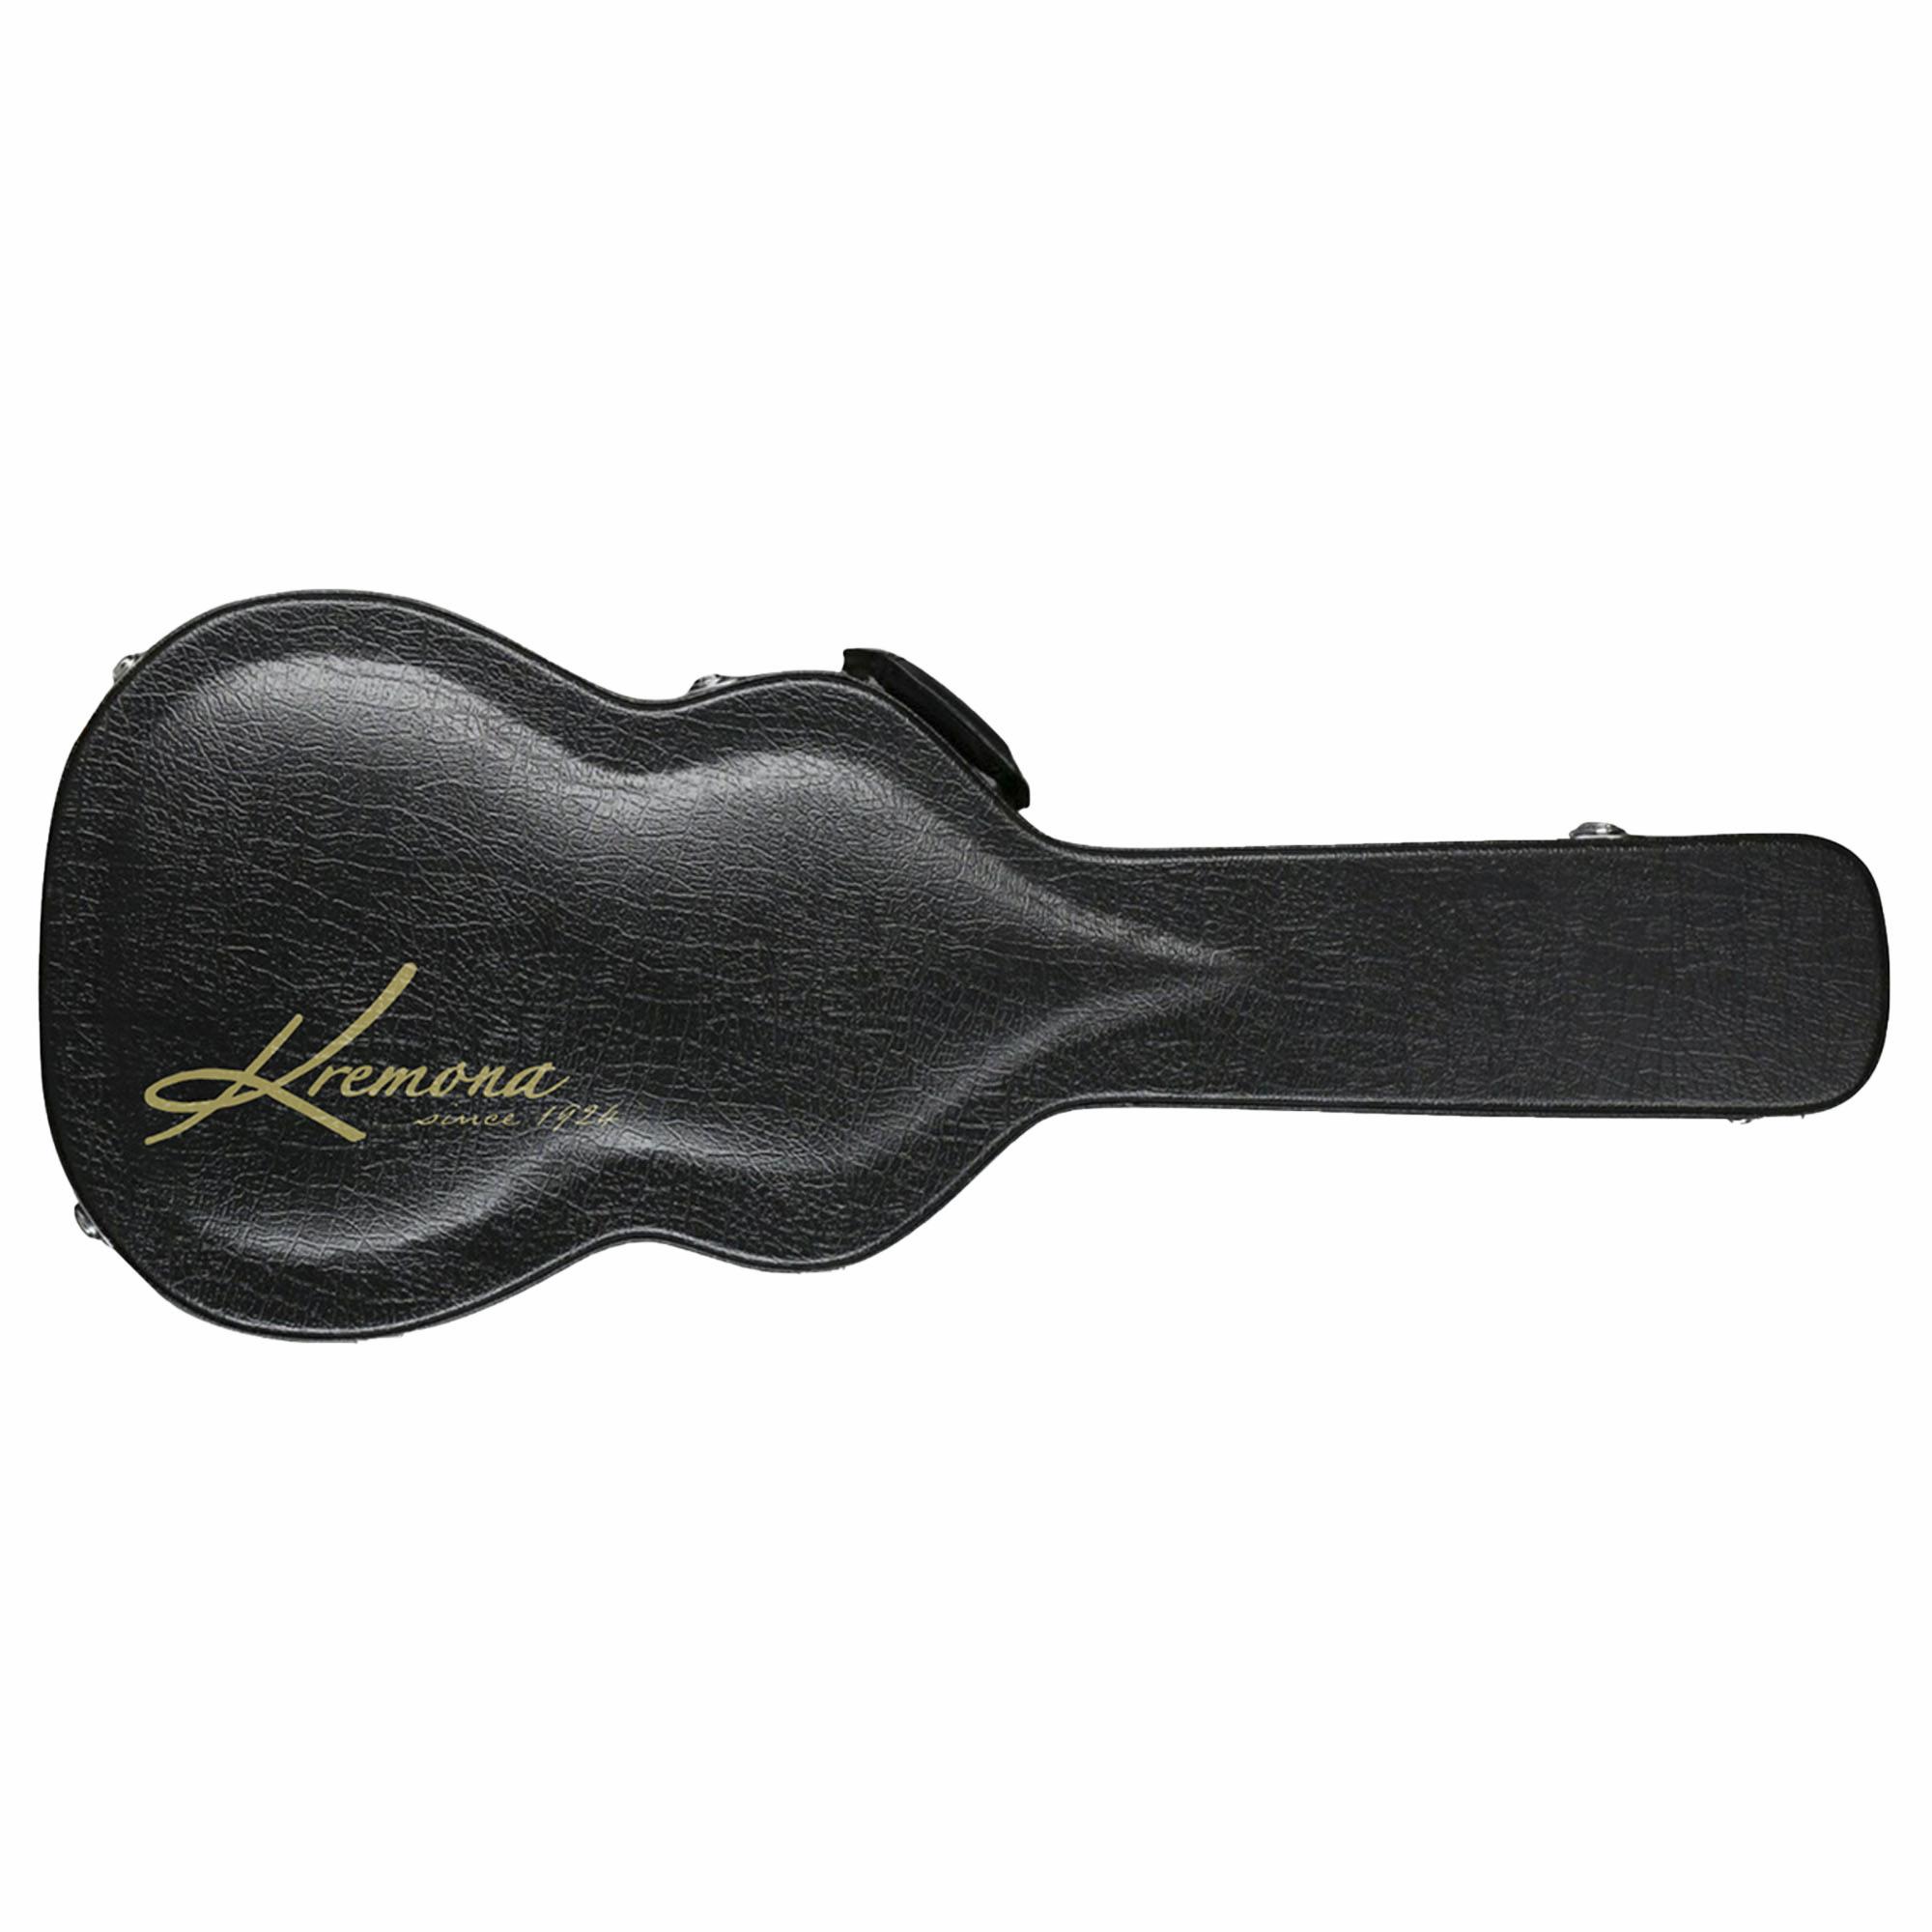 Kremona Fiesta Guitar